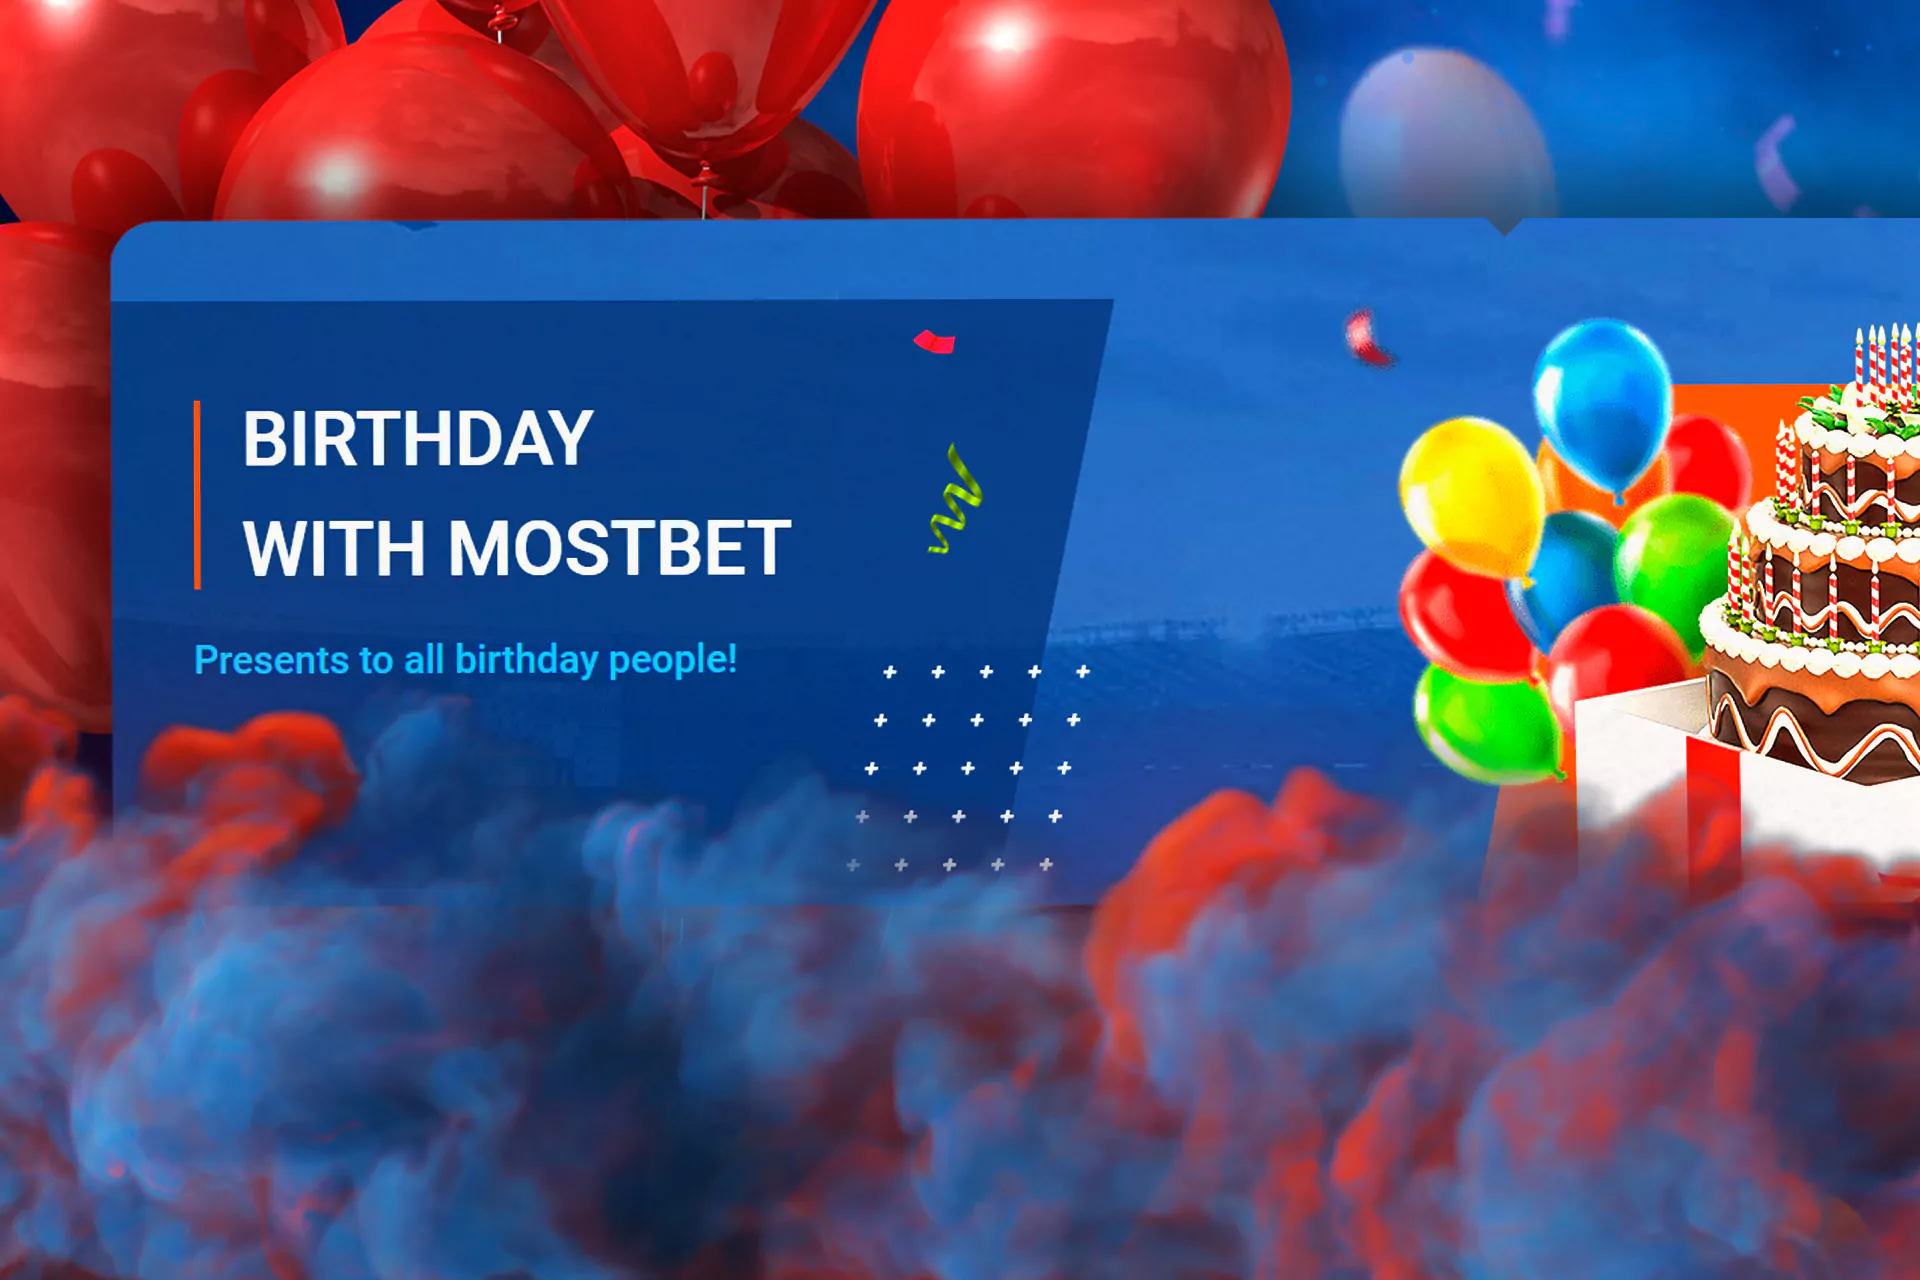 Birthday bonus with Mostbet.